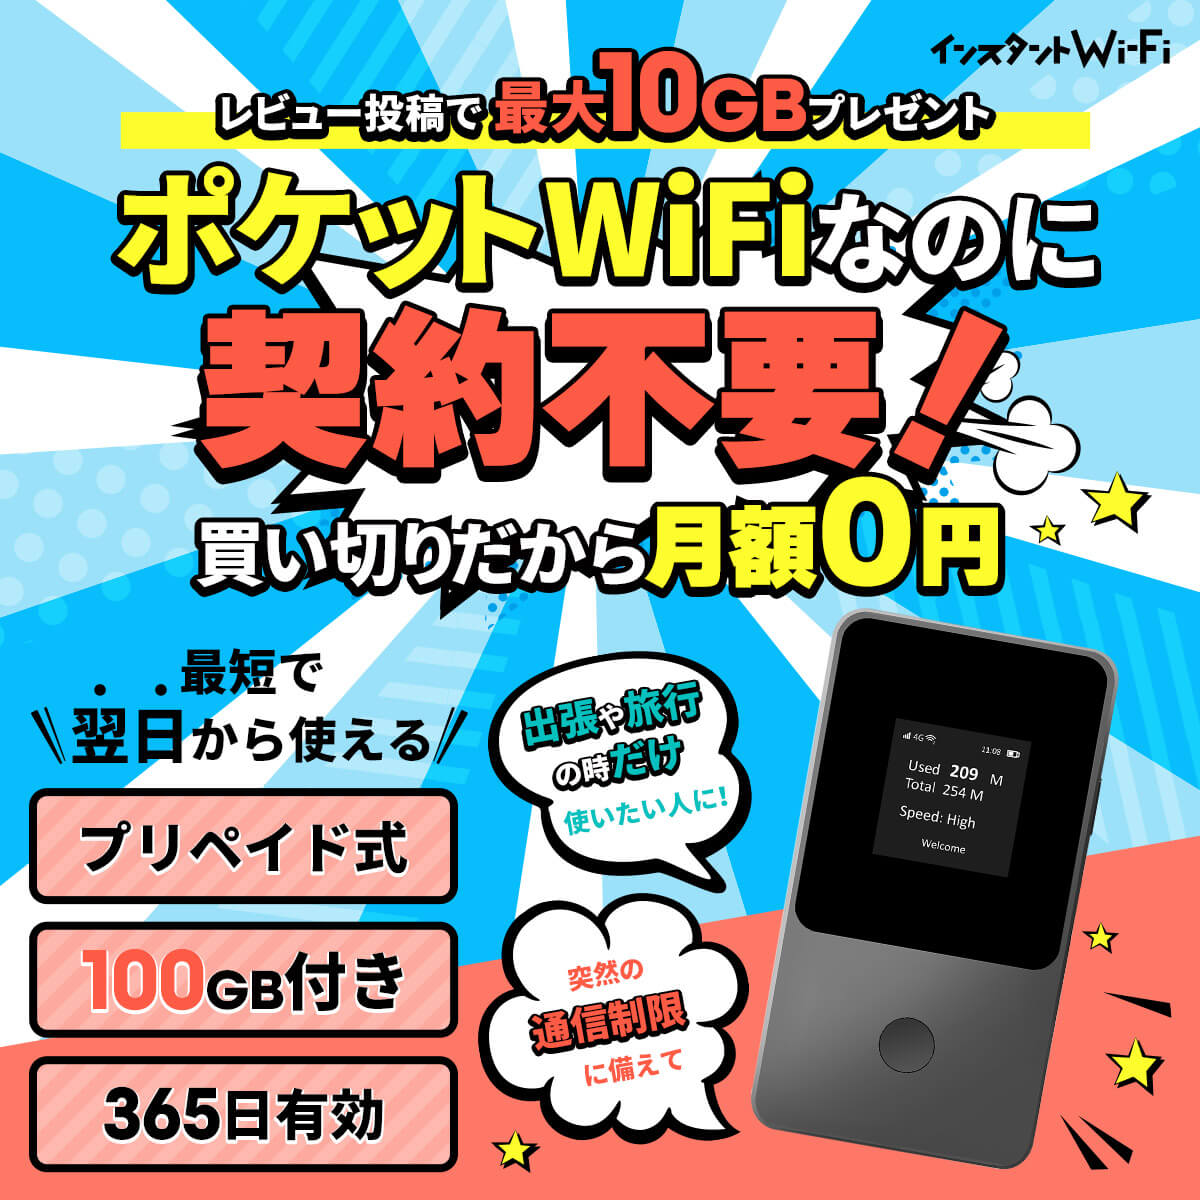  мгновенный Wi-Fi данные сообщение имеется карман WiFi покупка порез .plipeido type мобильный маршрутизатор срок действия 365 день Giga дополнение Charge 100GB план + дополнение 5GB подарок 